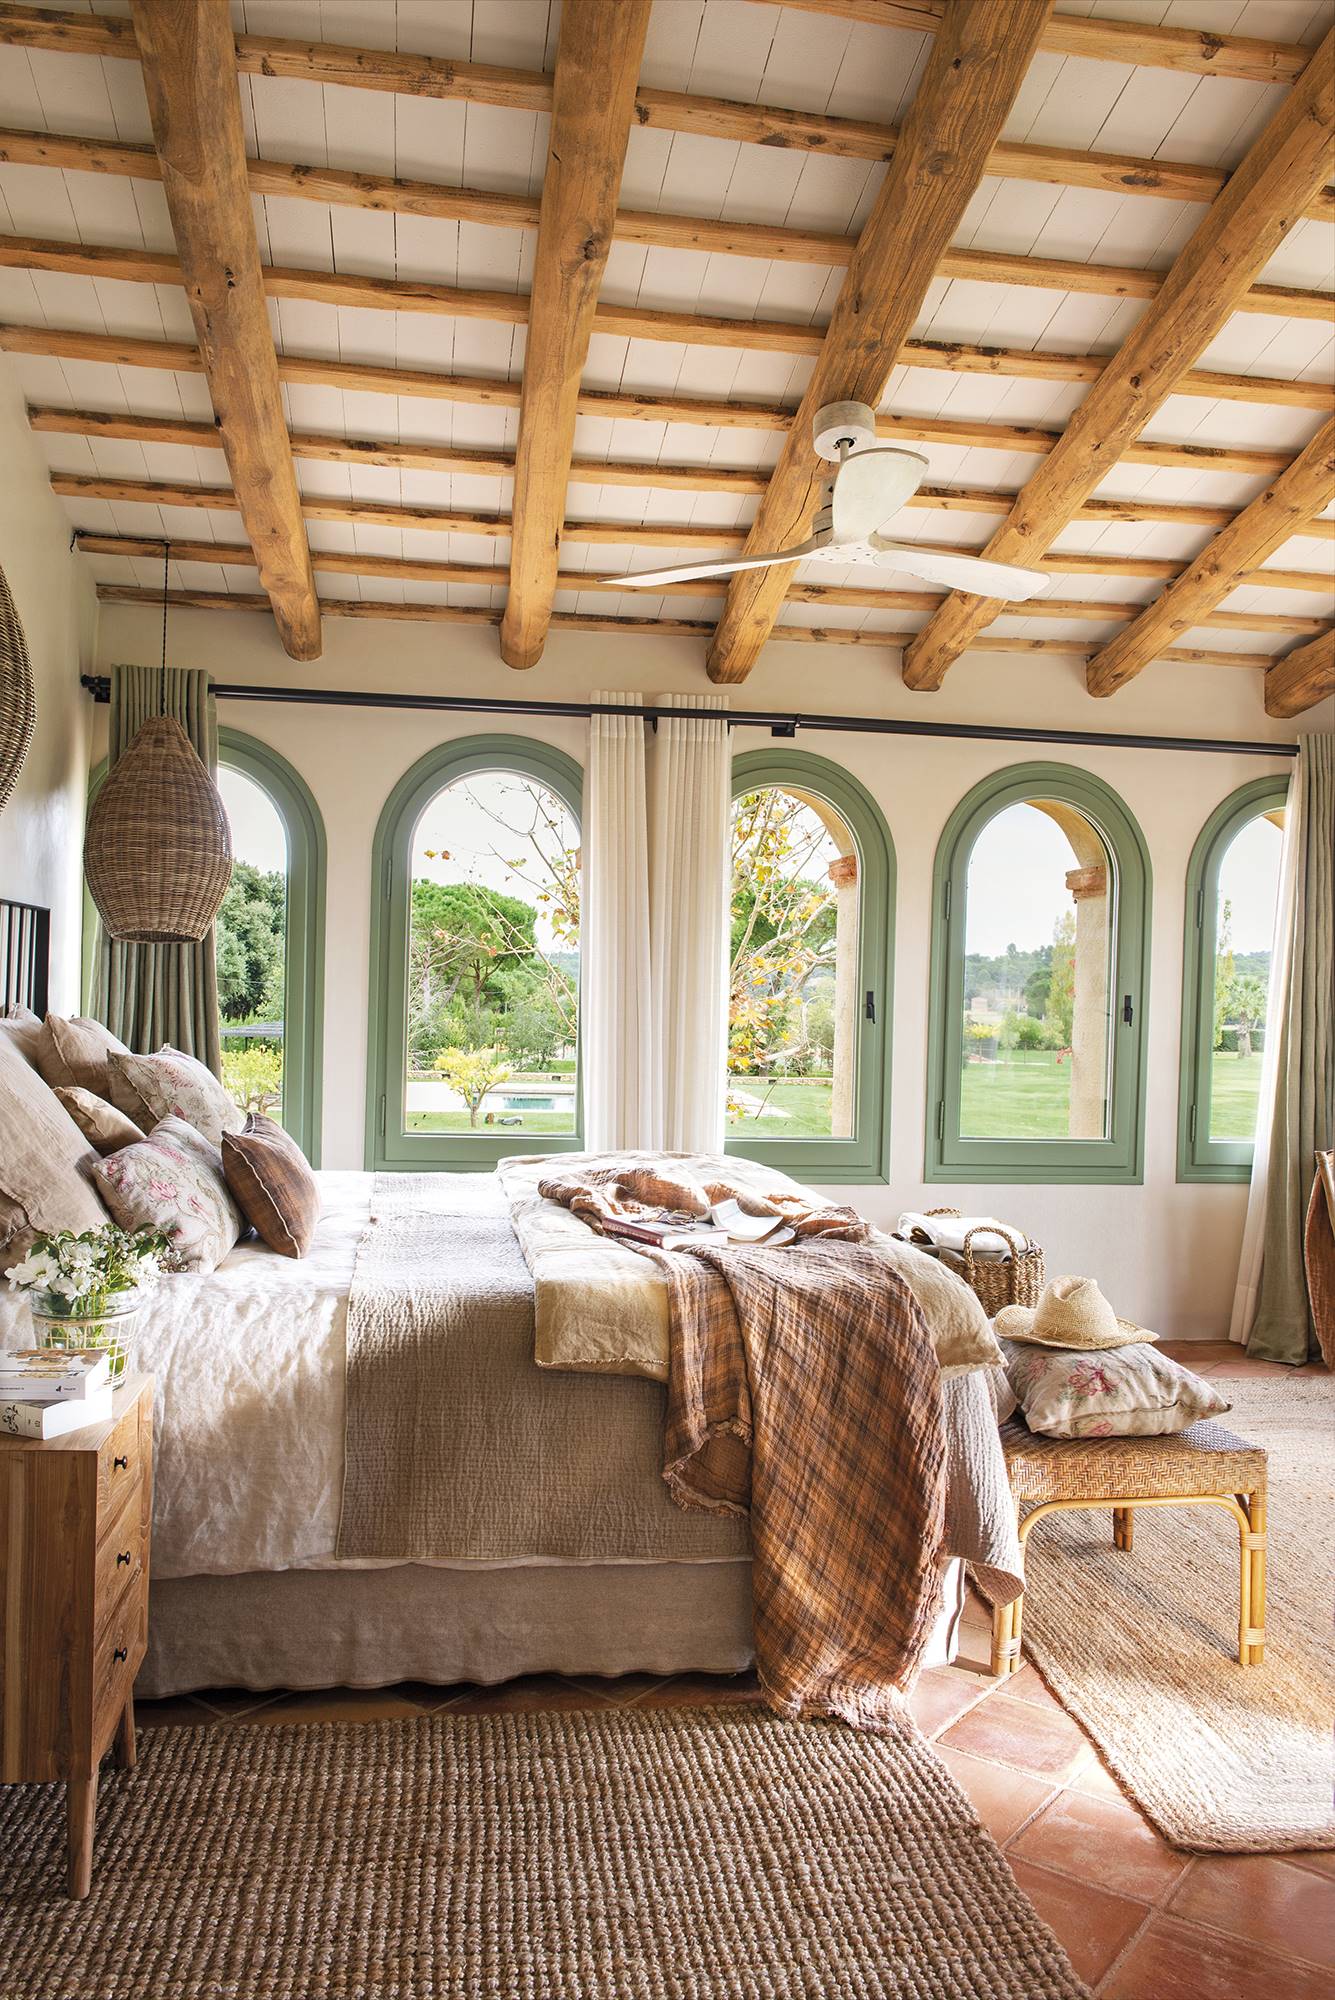 Dormitorio de estilo rústico con cama, vigas en el techo, ventanas verdes.